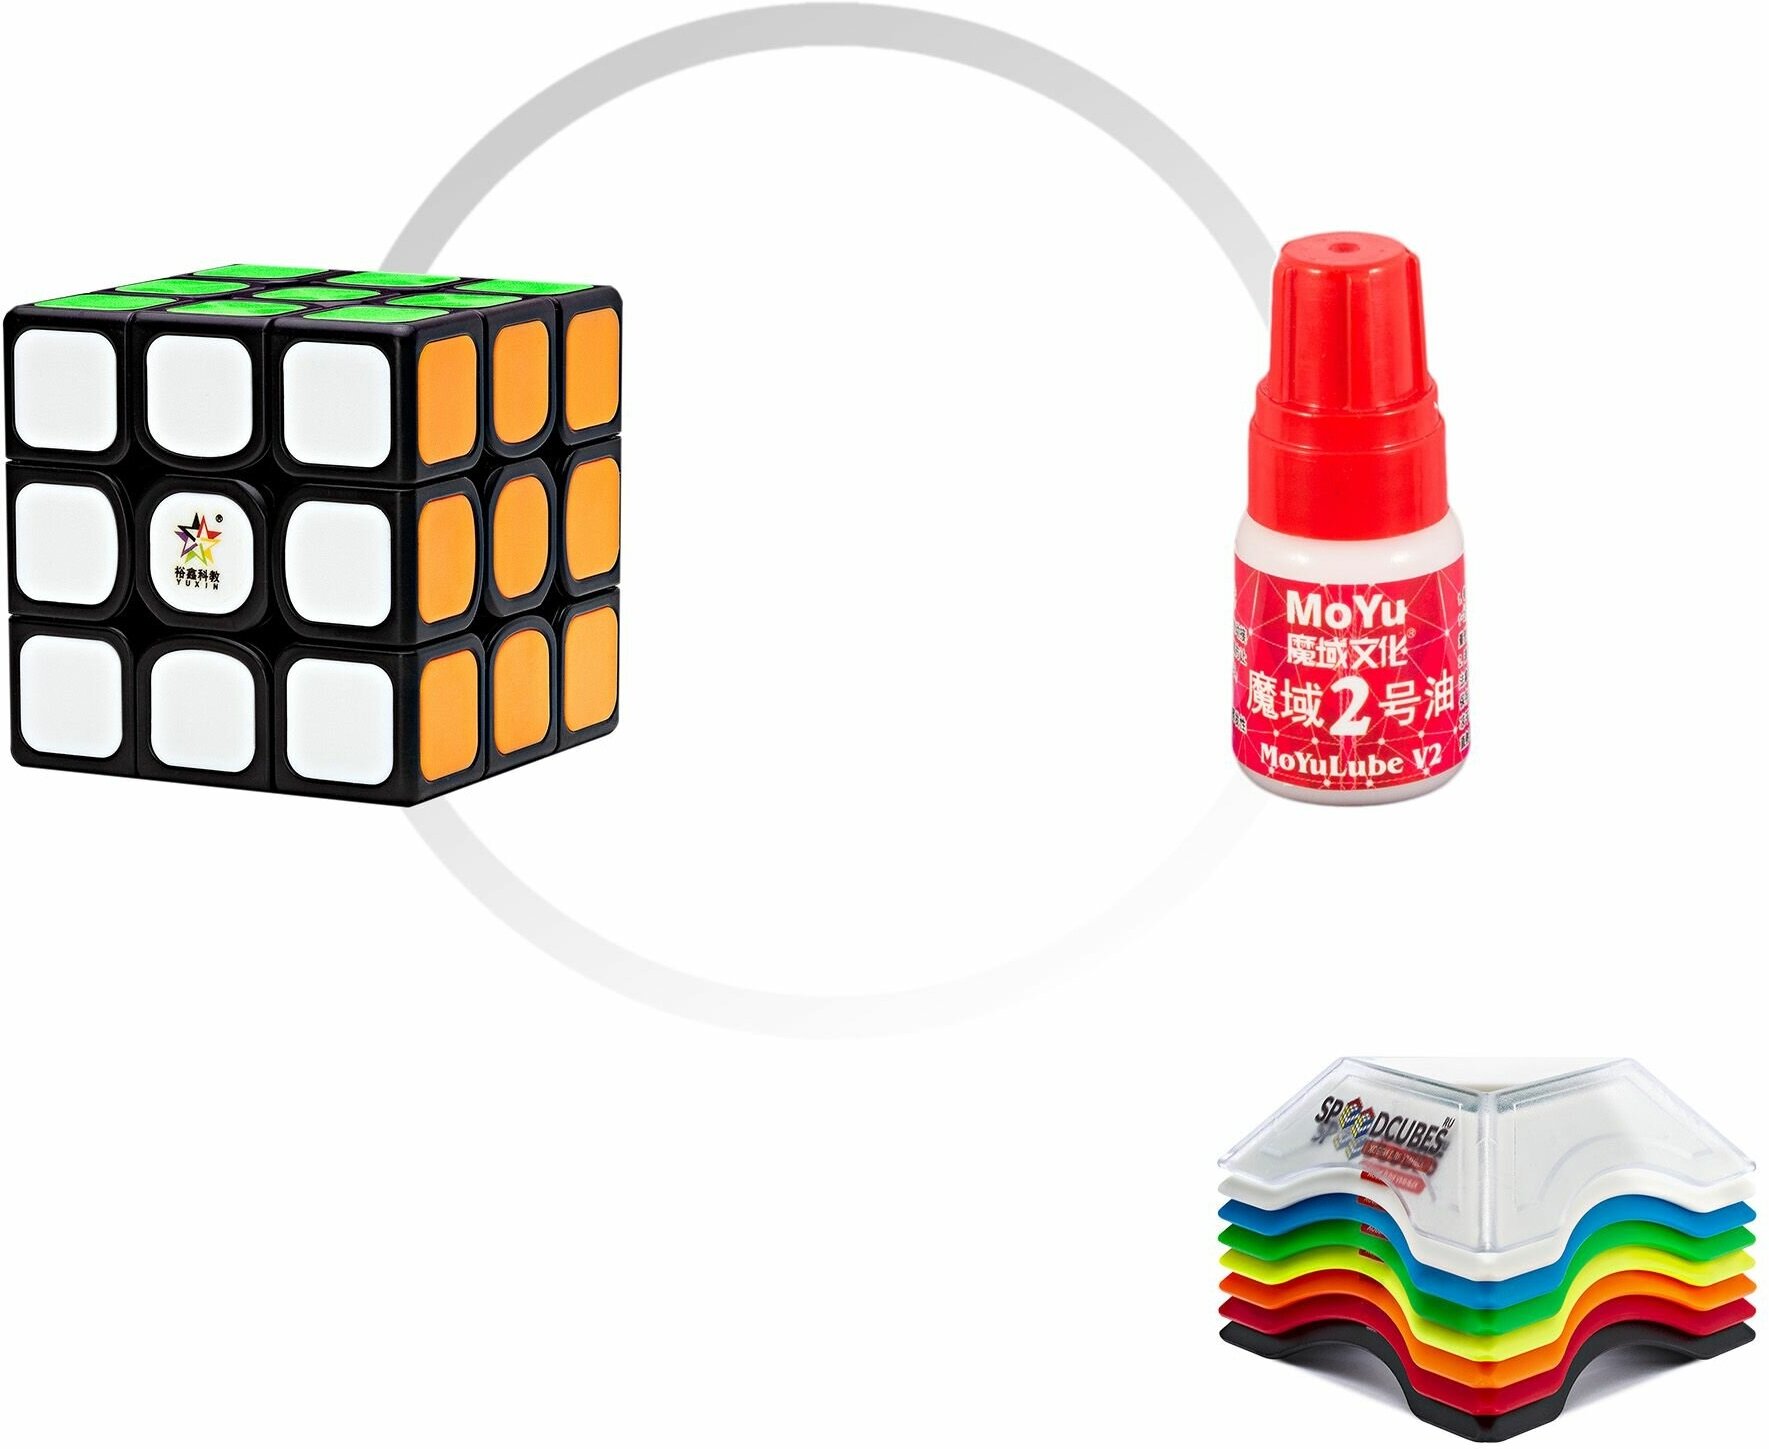 Комплект кубик Рубика скоростной YuXin Kilin Tiled v2 3x3x3 + смазка MoYu Red lube v1 + подставка для кубика